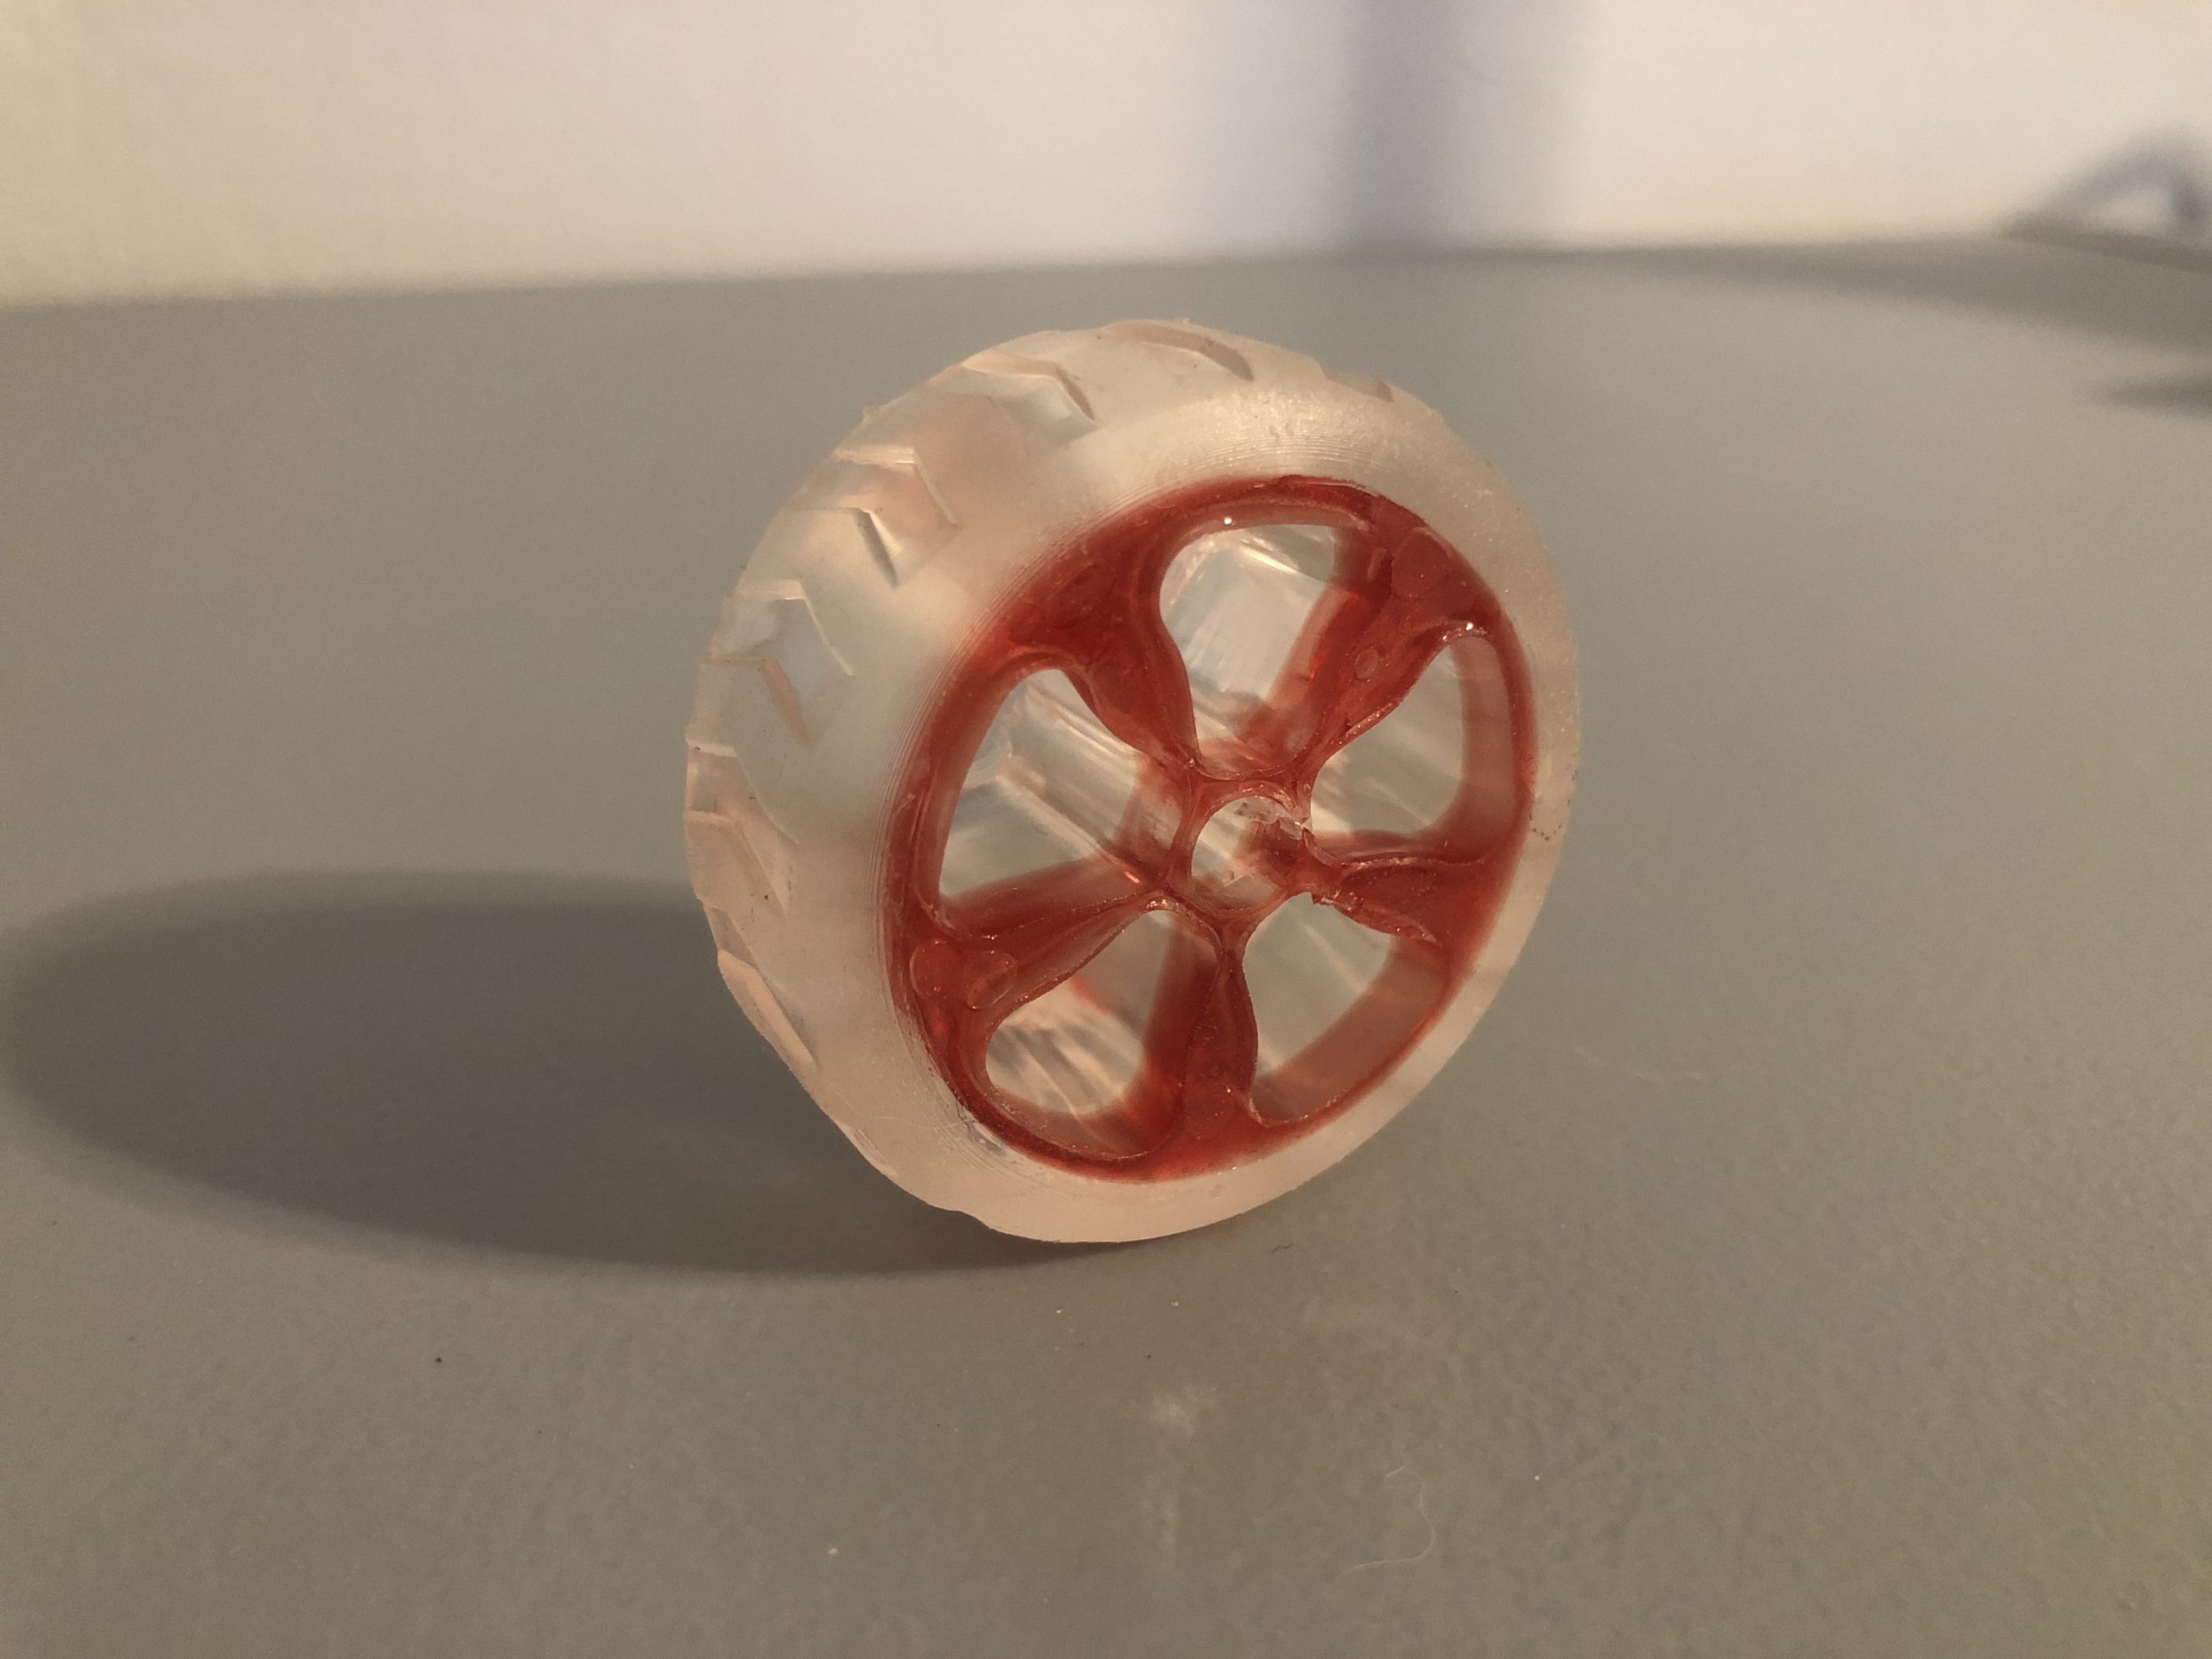 Multi-Material Resin 3D Printing Tutorial